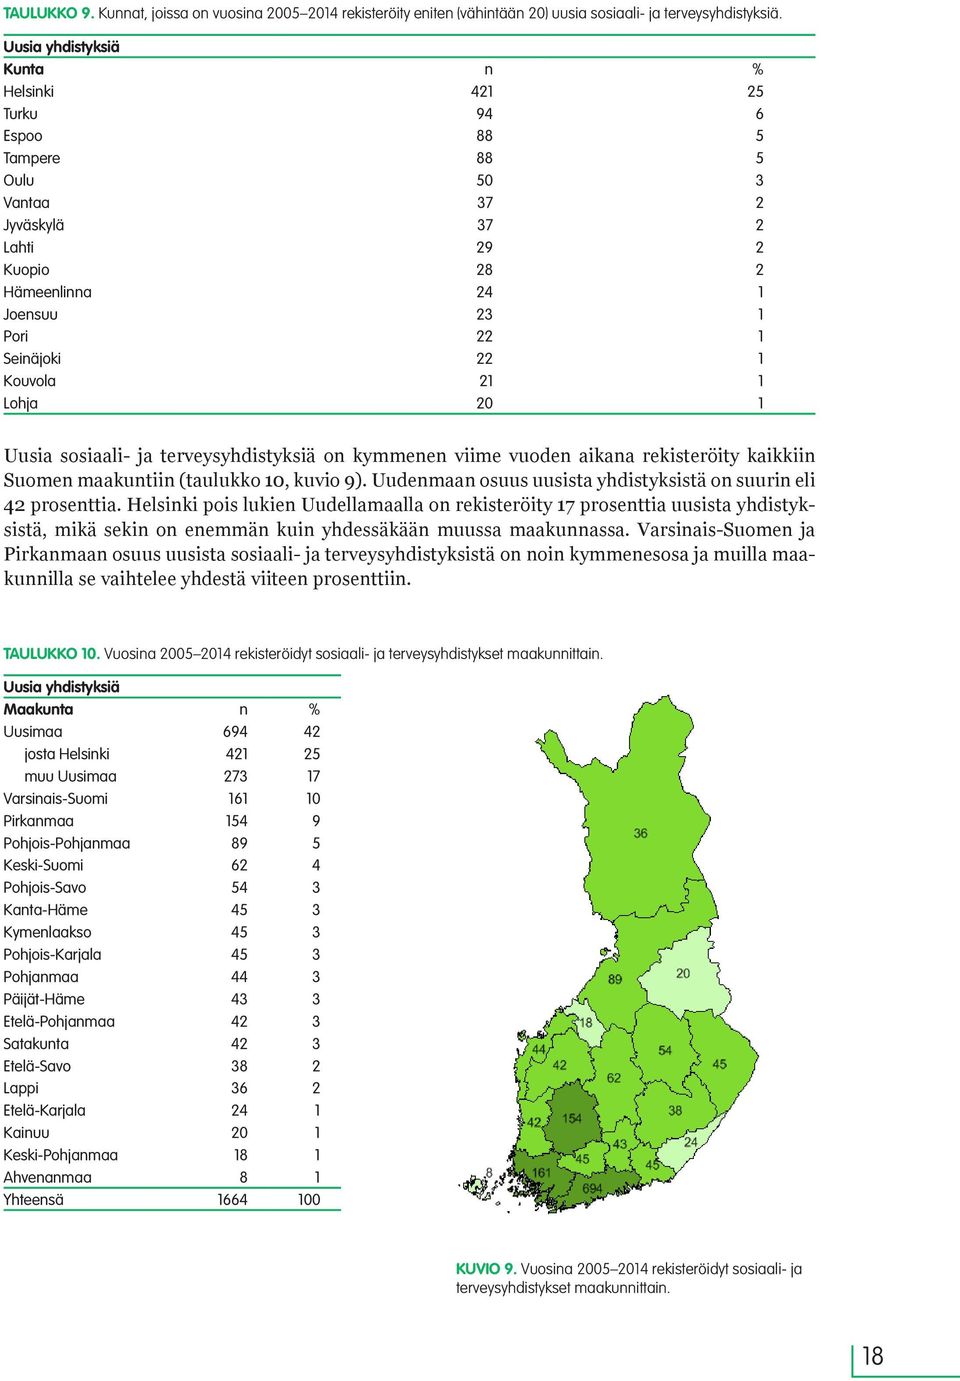 Kouvola 21 1 Lohja 20 1 Uusia sosiaali- ja terveysyhdistyksiä on kymmenen viime vuoden aikana rekisteröity kaikkiin Suomen maakuntiin (taulukko 10, kuvio 9).